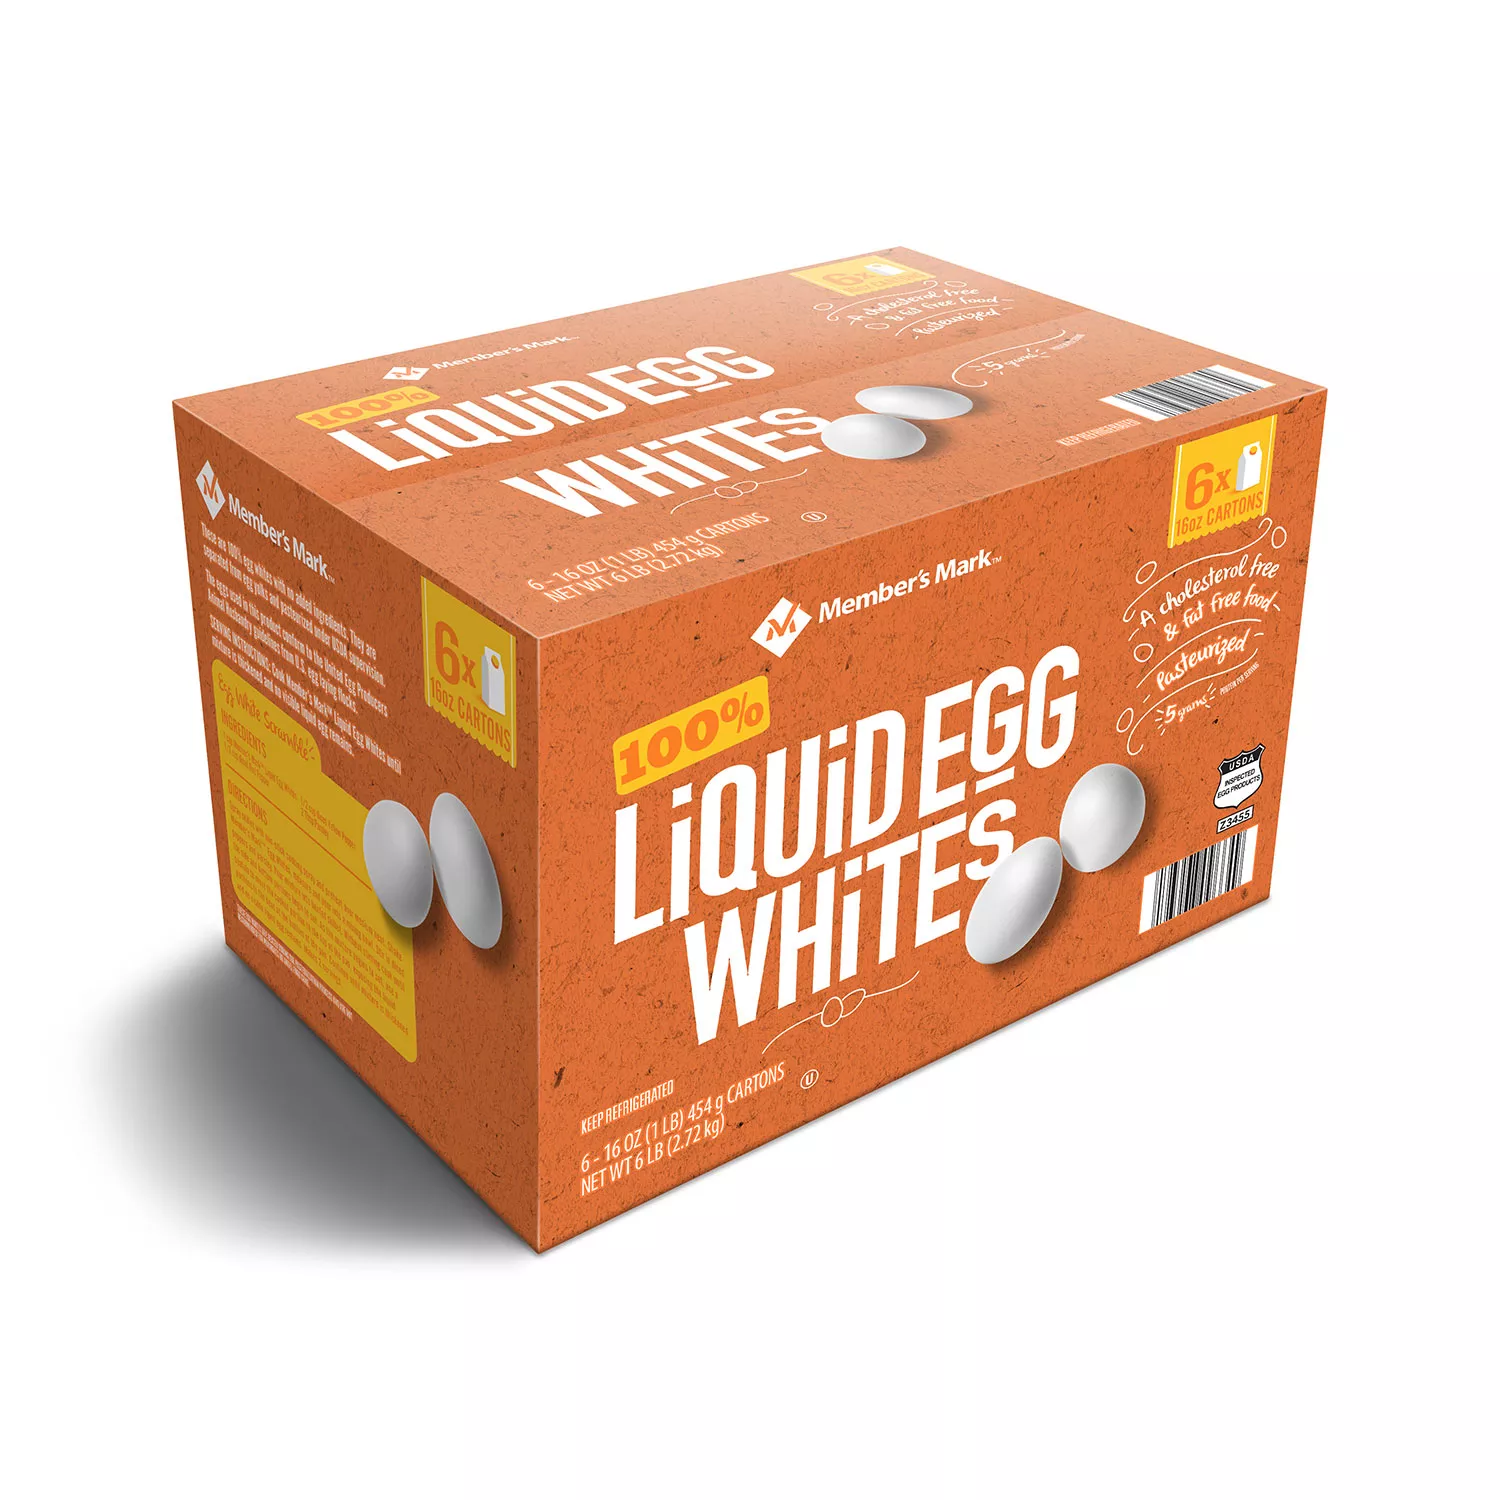 Member's Mark Liquid Egg Whites